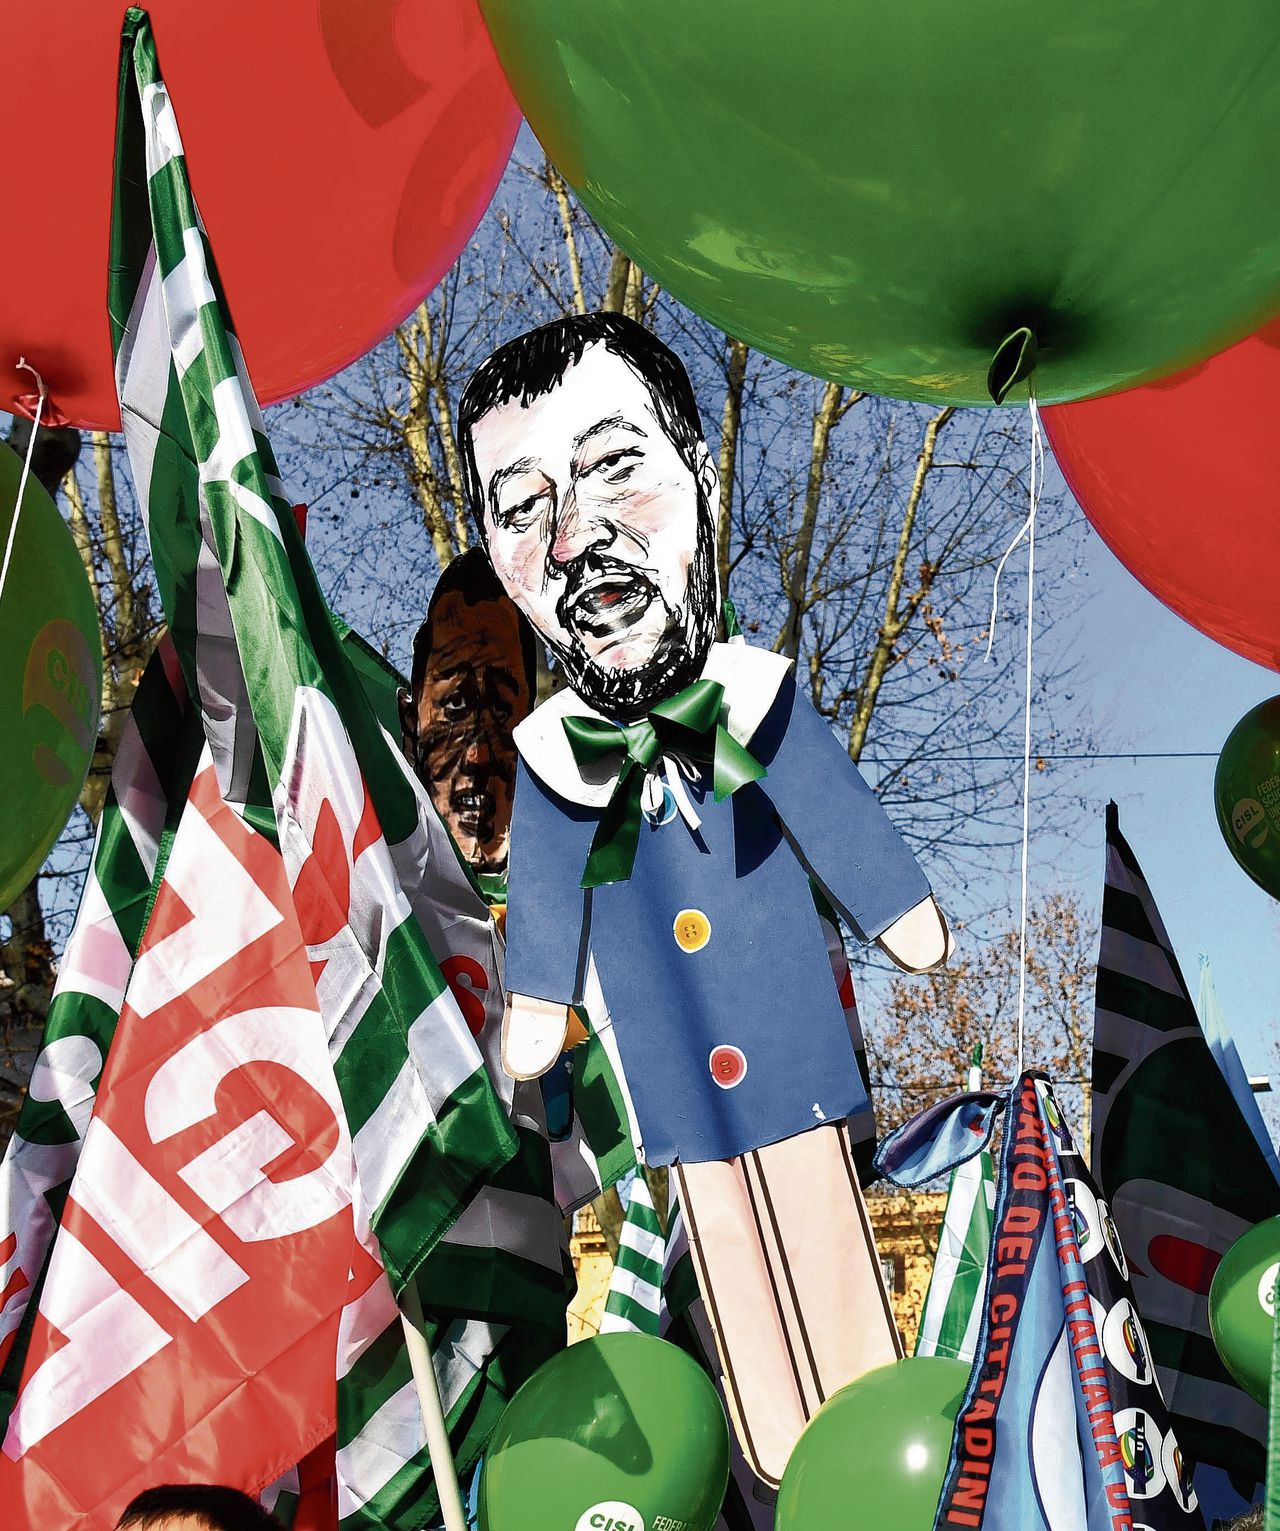 Populist Salvini heeft het tij mee, dat wil zeggen: voorlopig 